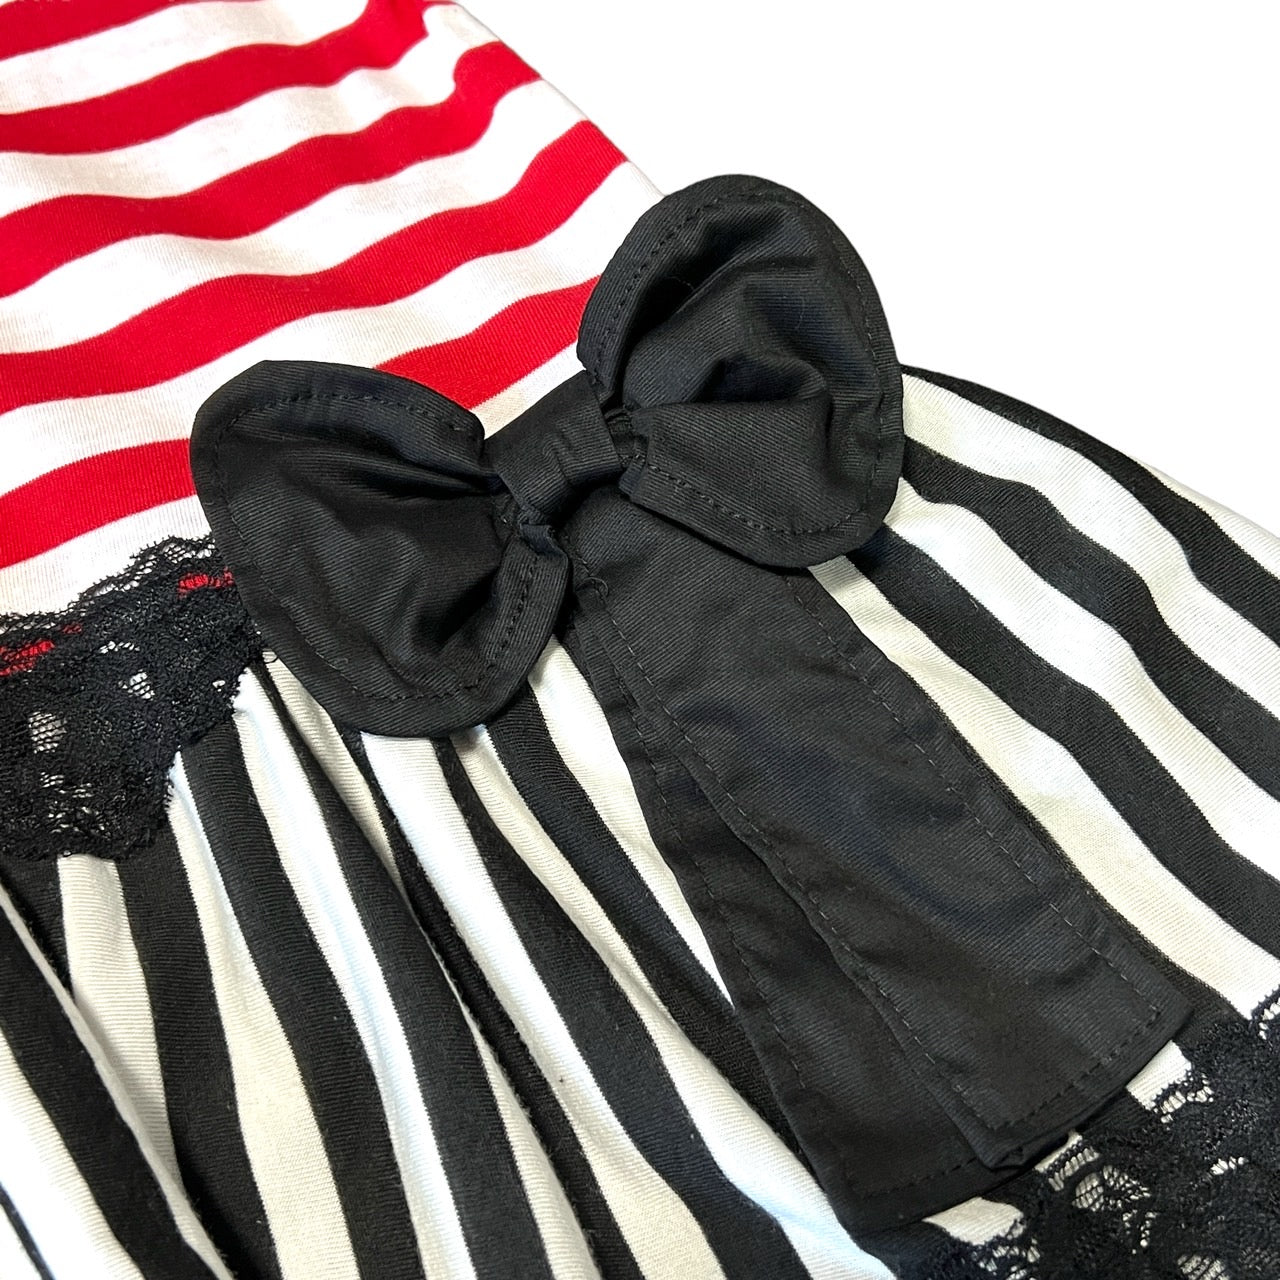 Panda button/stripe switching dress [B]